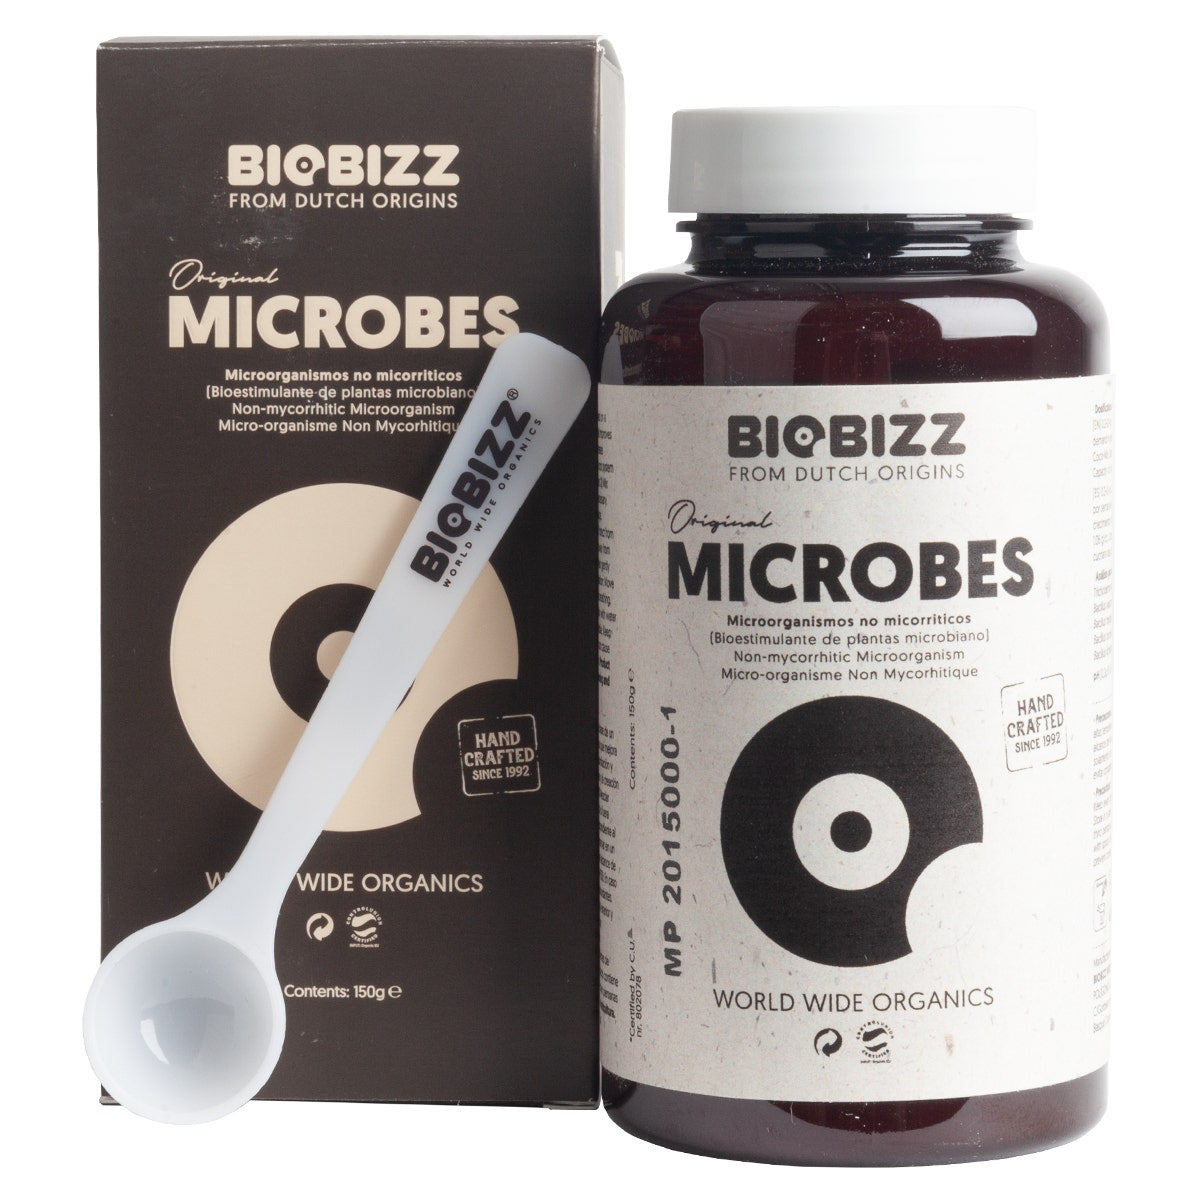 BioBizz Microbes